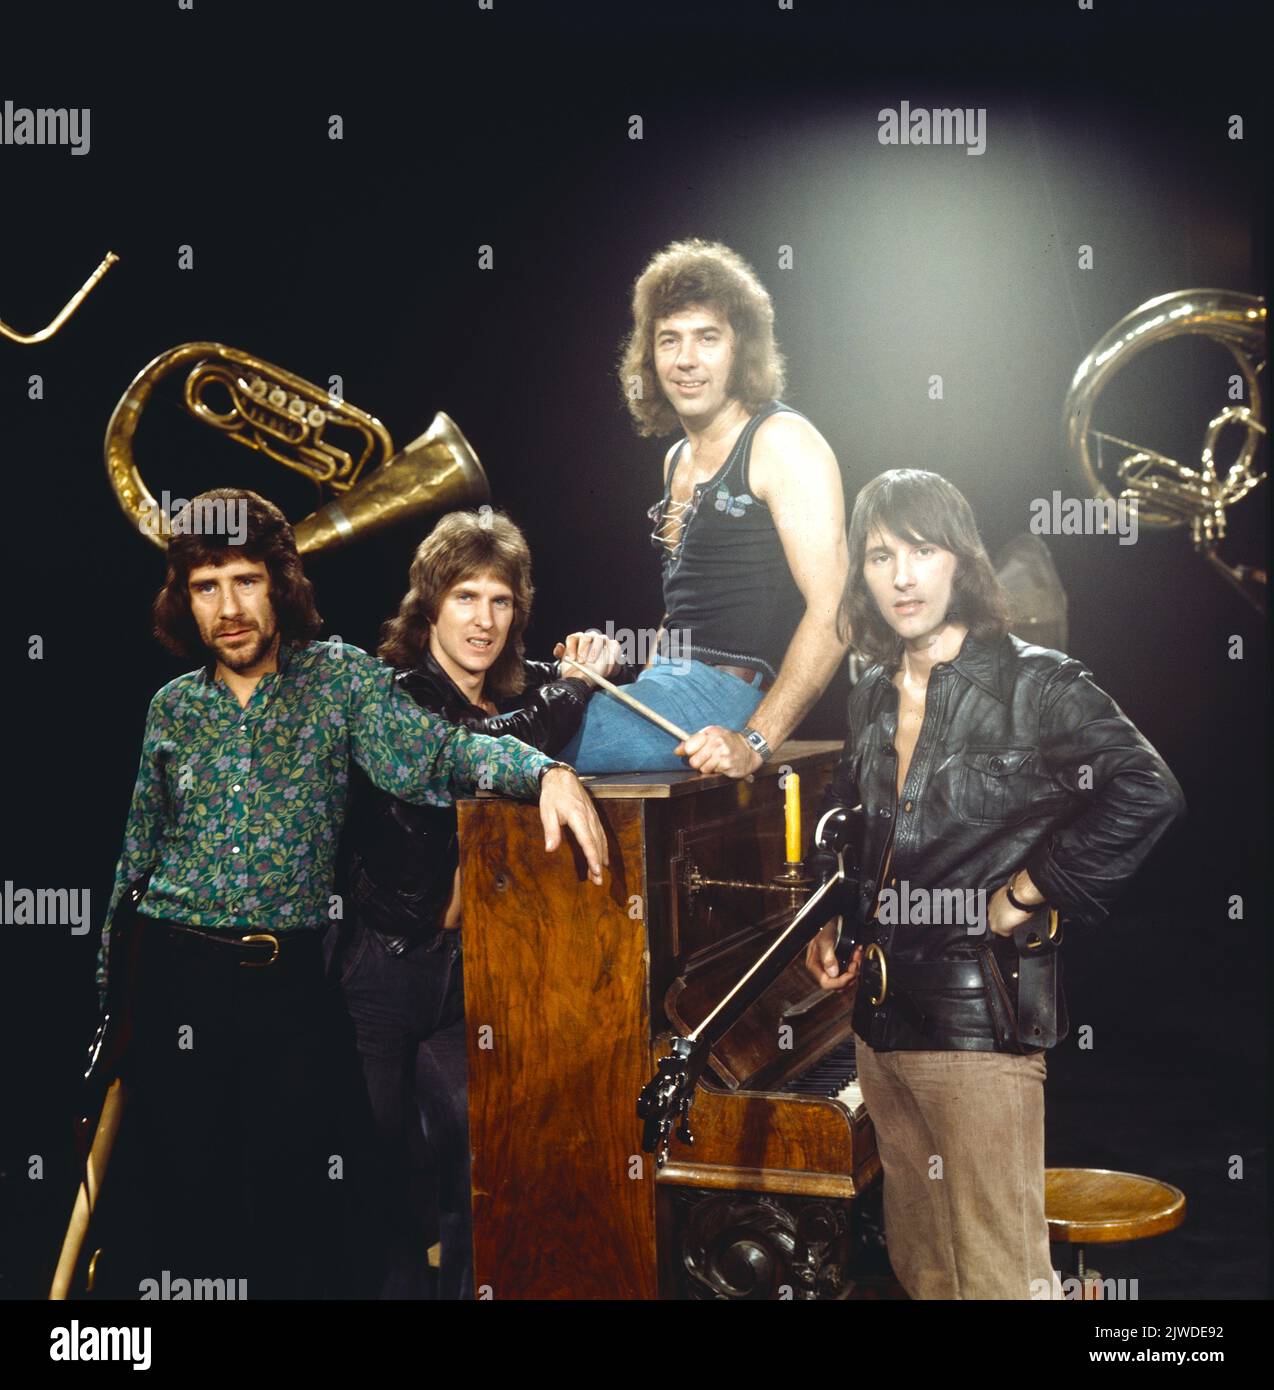 The Tremeloes, britische Pop Band, Foto circa 1970. The Tremeloes, British Pop Band, photo circa 1970. Stock Photo